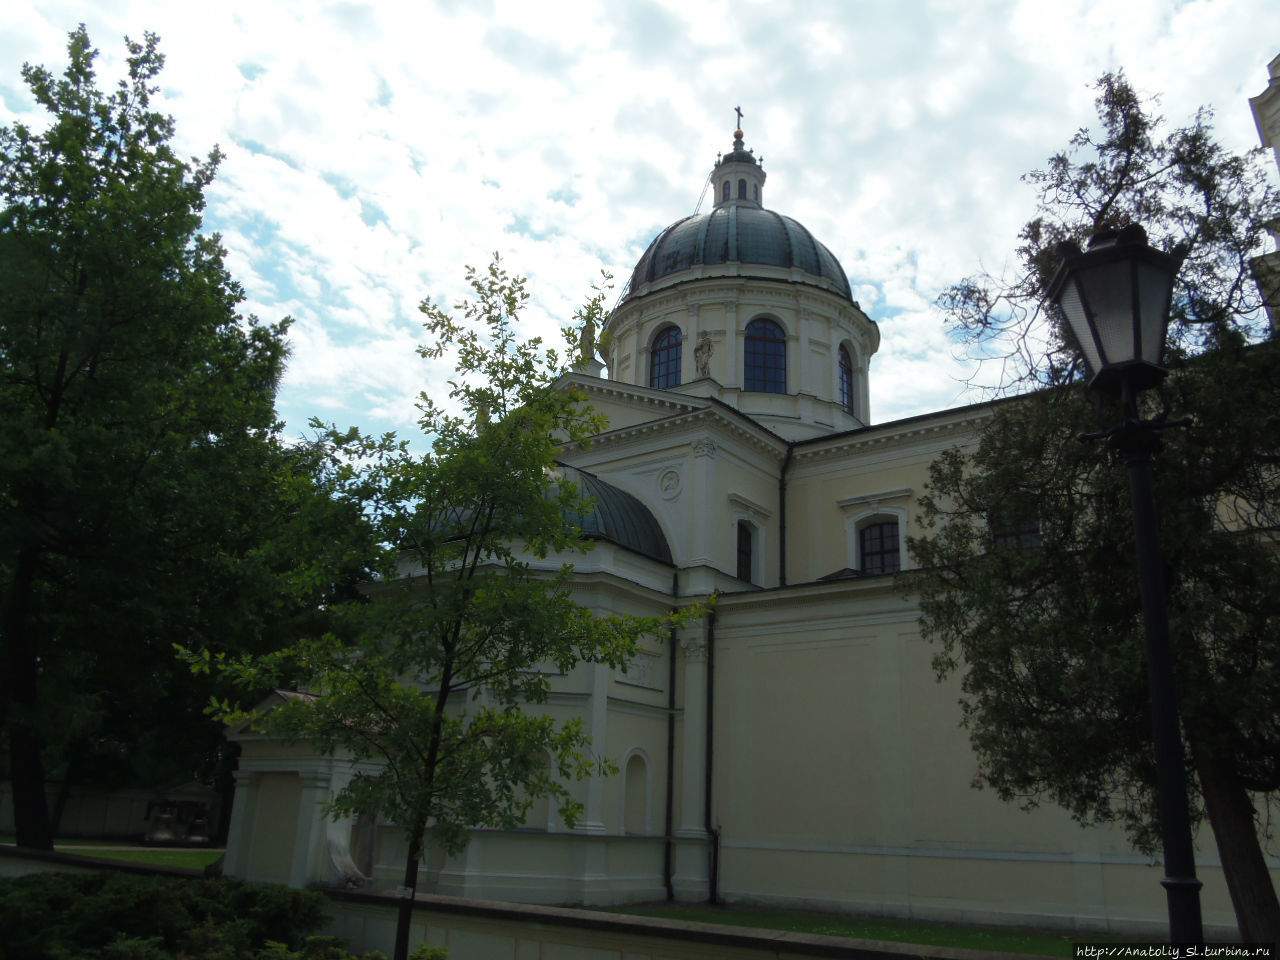 Вилянув. Часть 1. Костел святой Анны Варшава, Польша